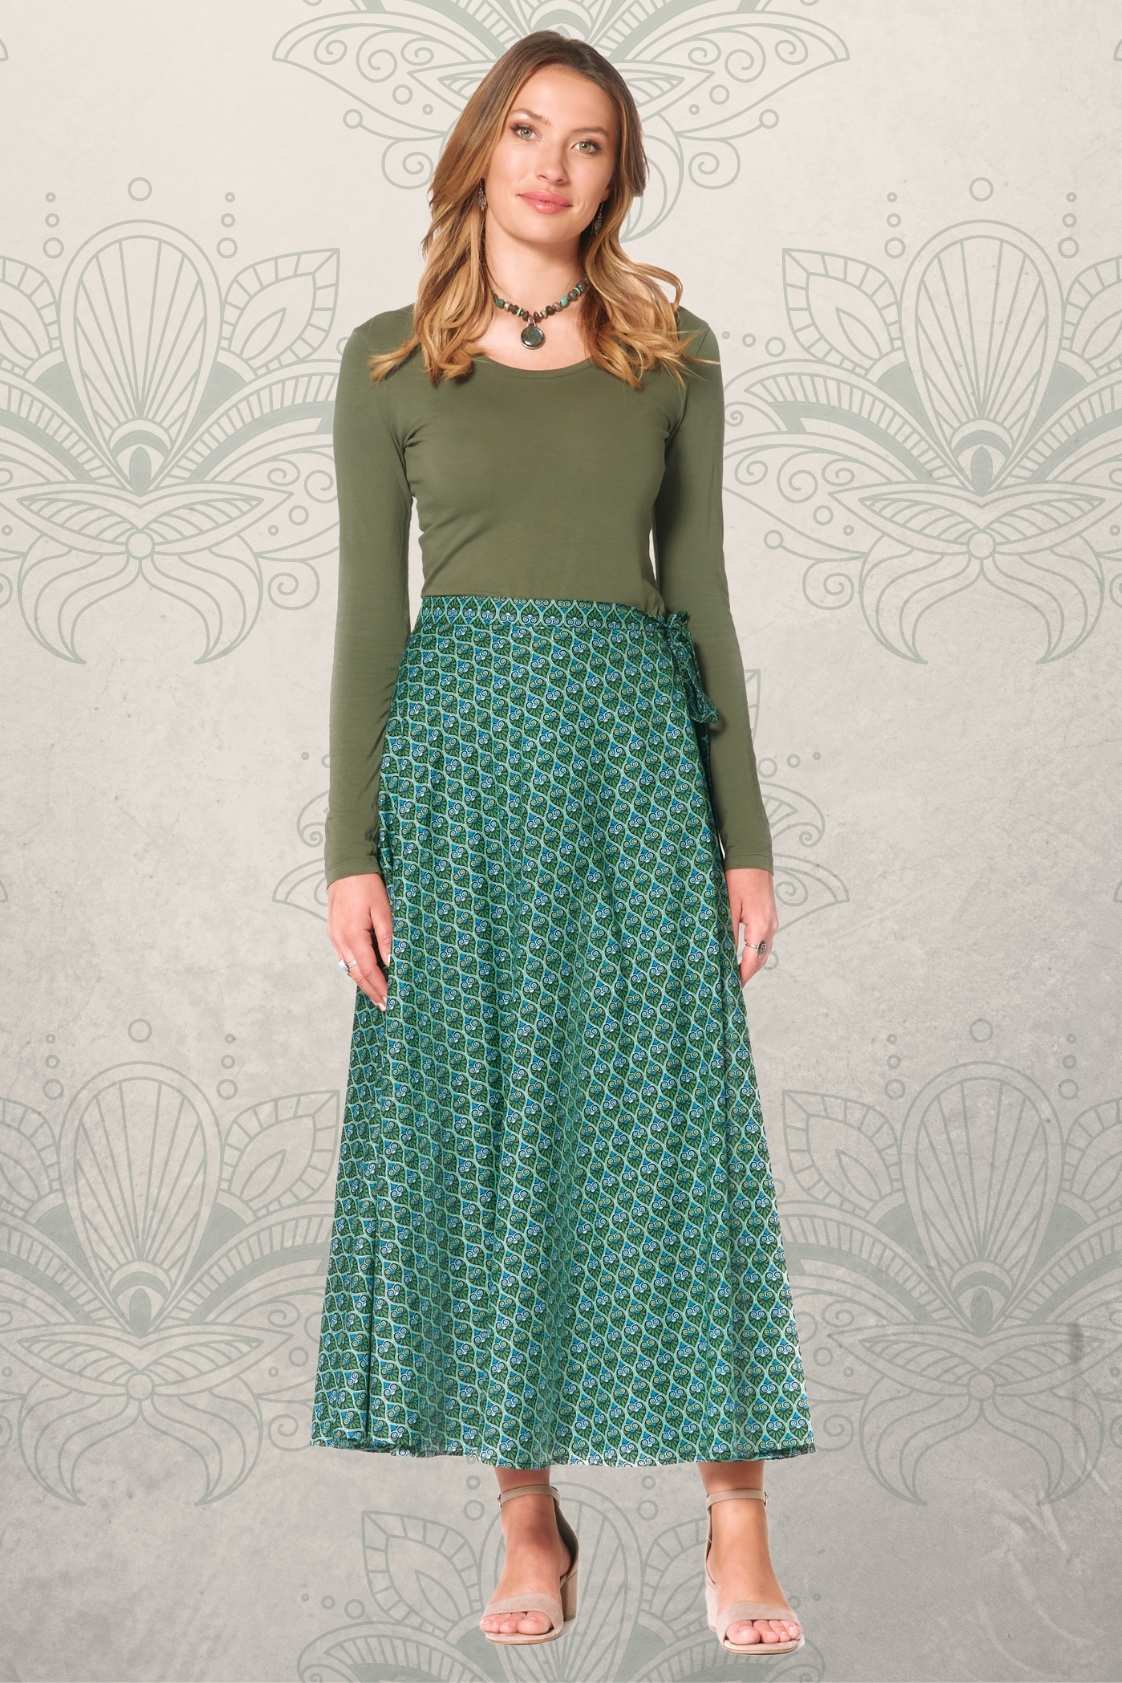 Grace Long Cotton Wrap Skirt - Forest Print